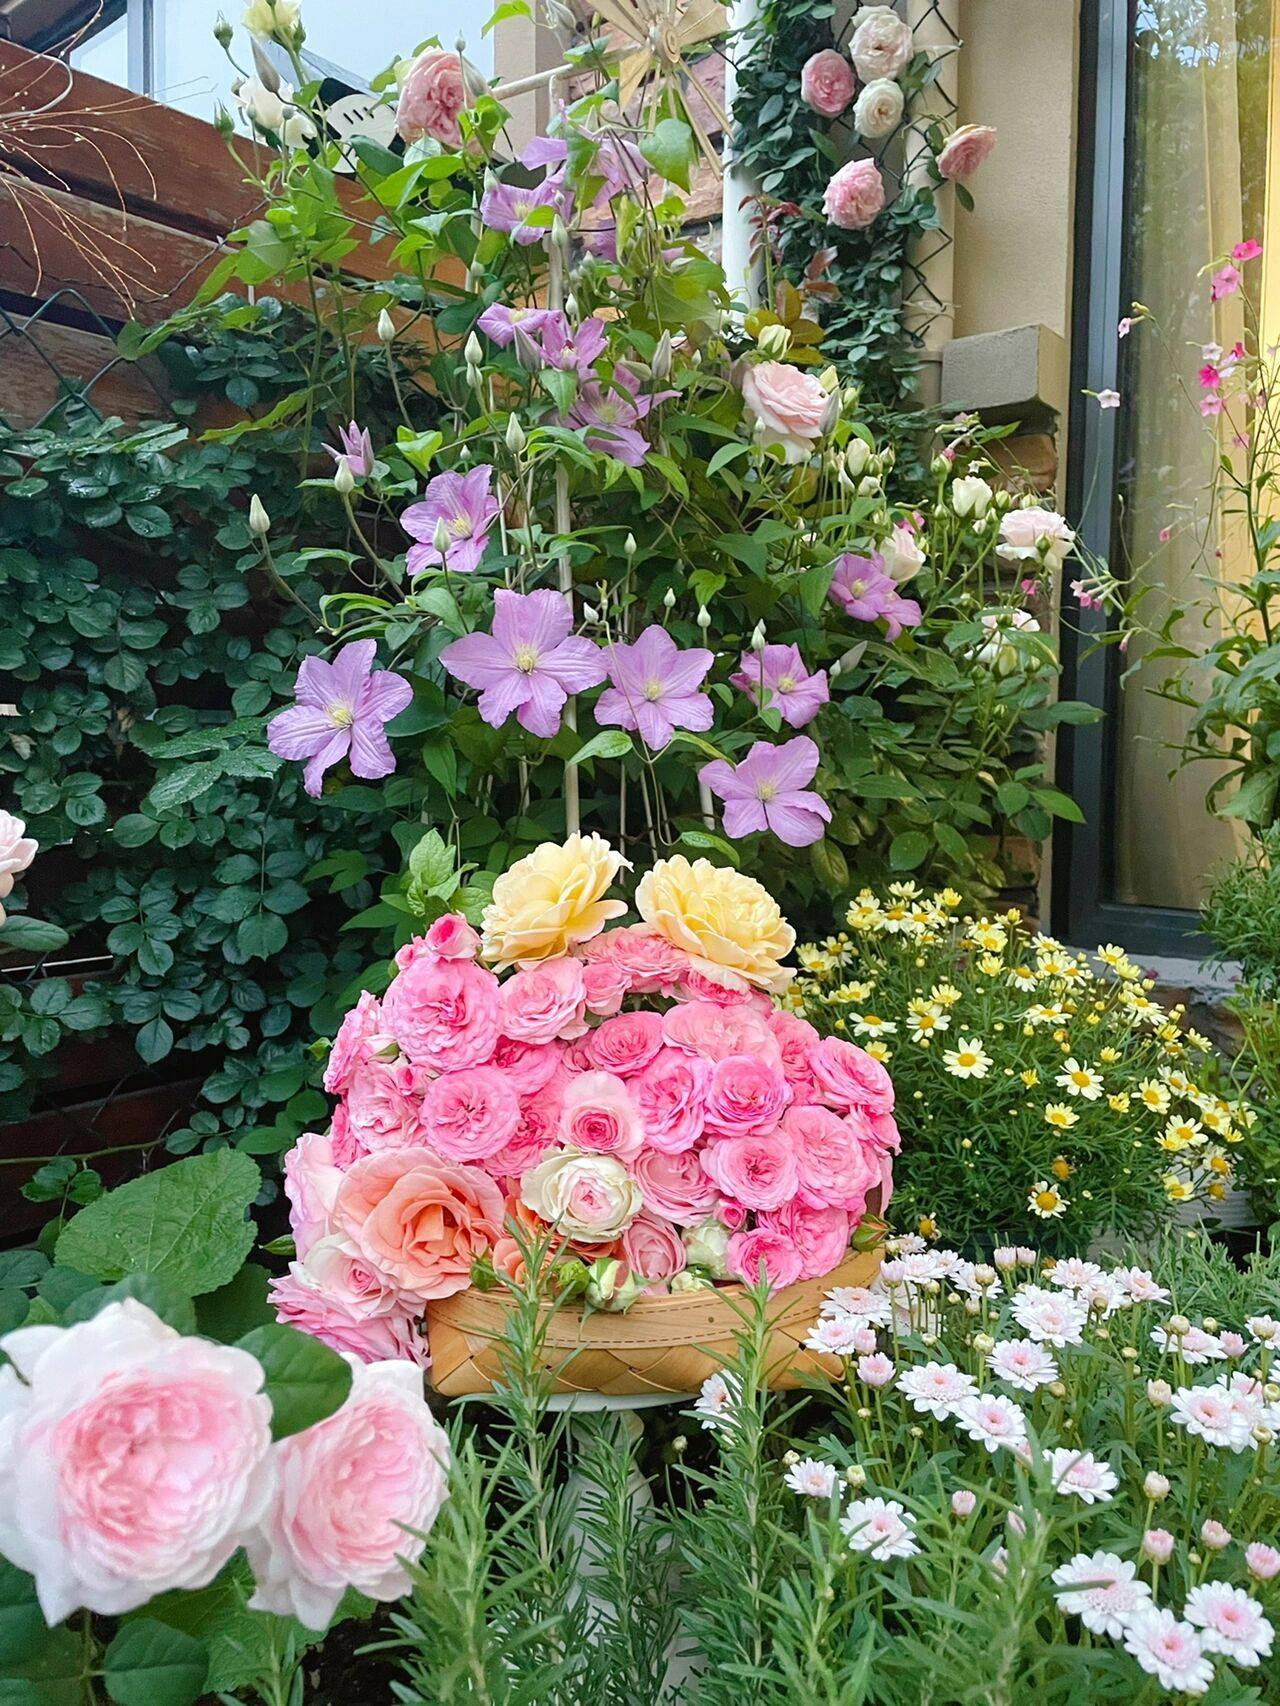 Cô nàng 9x mừng tuổi 31 với căn nhà mới có cả sân trước và sau 300 ngày, khu vườn đã nở rộ đầy hoa - Ảnh 8.